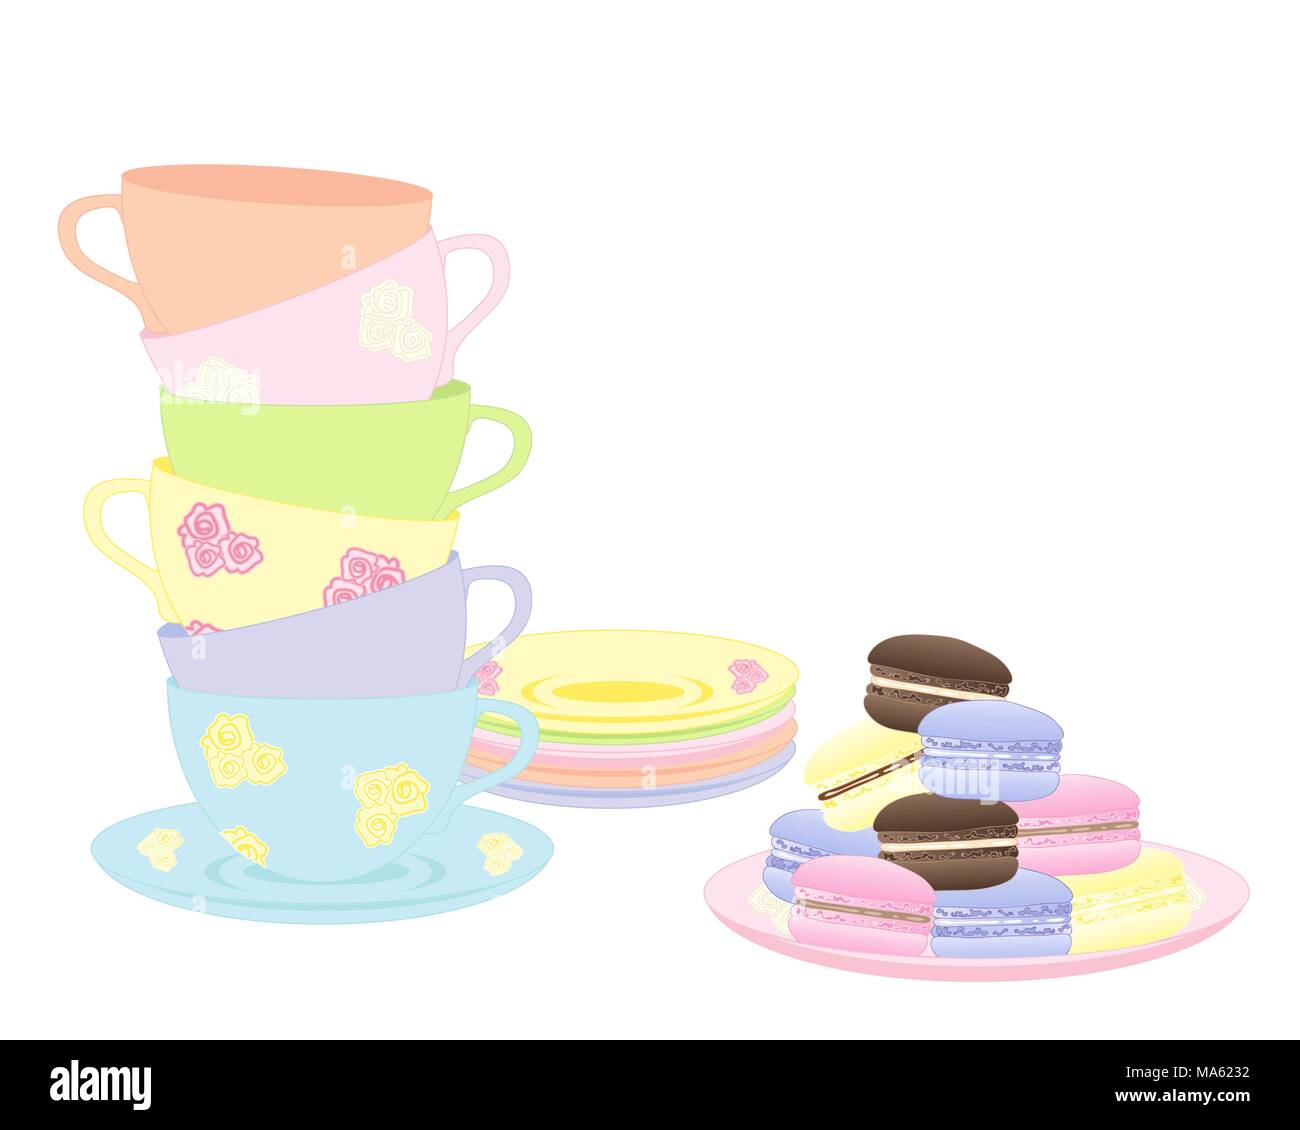 Un vecteur illustration en eps 10 forma d'un empilement de tasses et soucoupes de fantaisie avec un plateau de macarons colorés isolé sur fond blanc Illustration de Vecteur